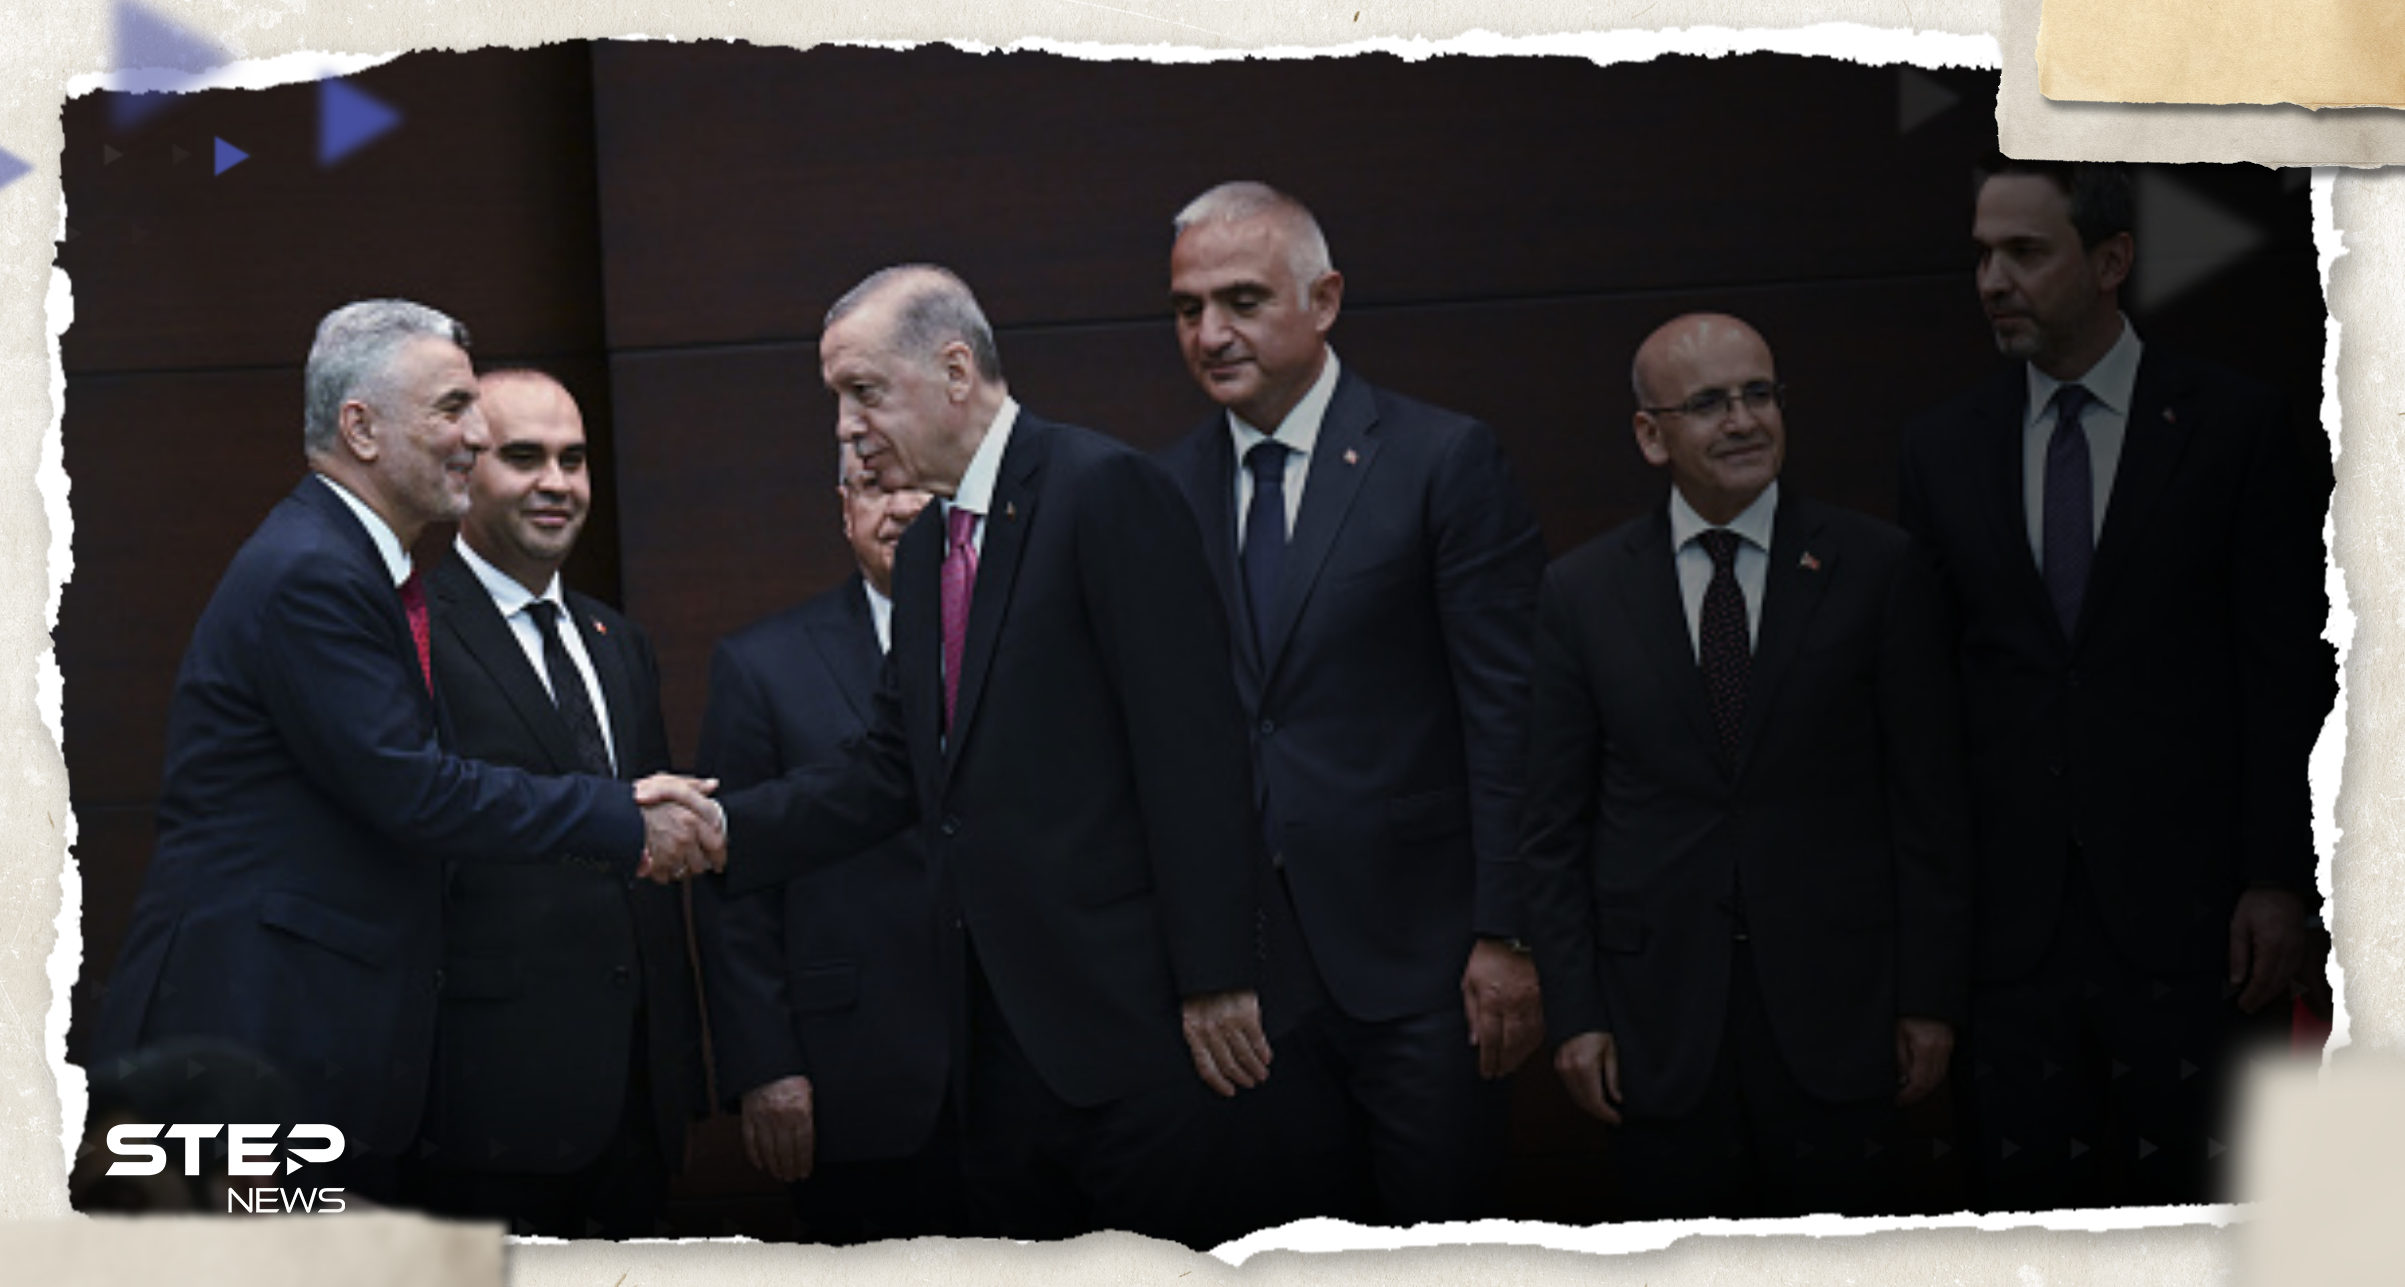 أكبر تحدٍ لـ الحكومة التركية الجديدة يبدأ منذ اليوم الأول.. "الليرة تنهار"